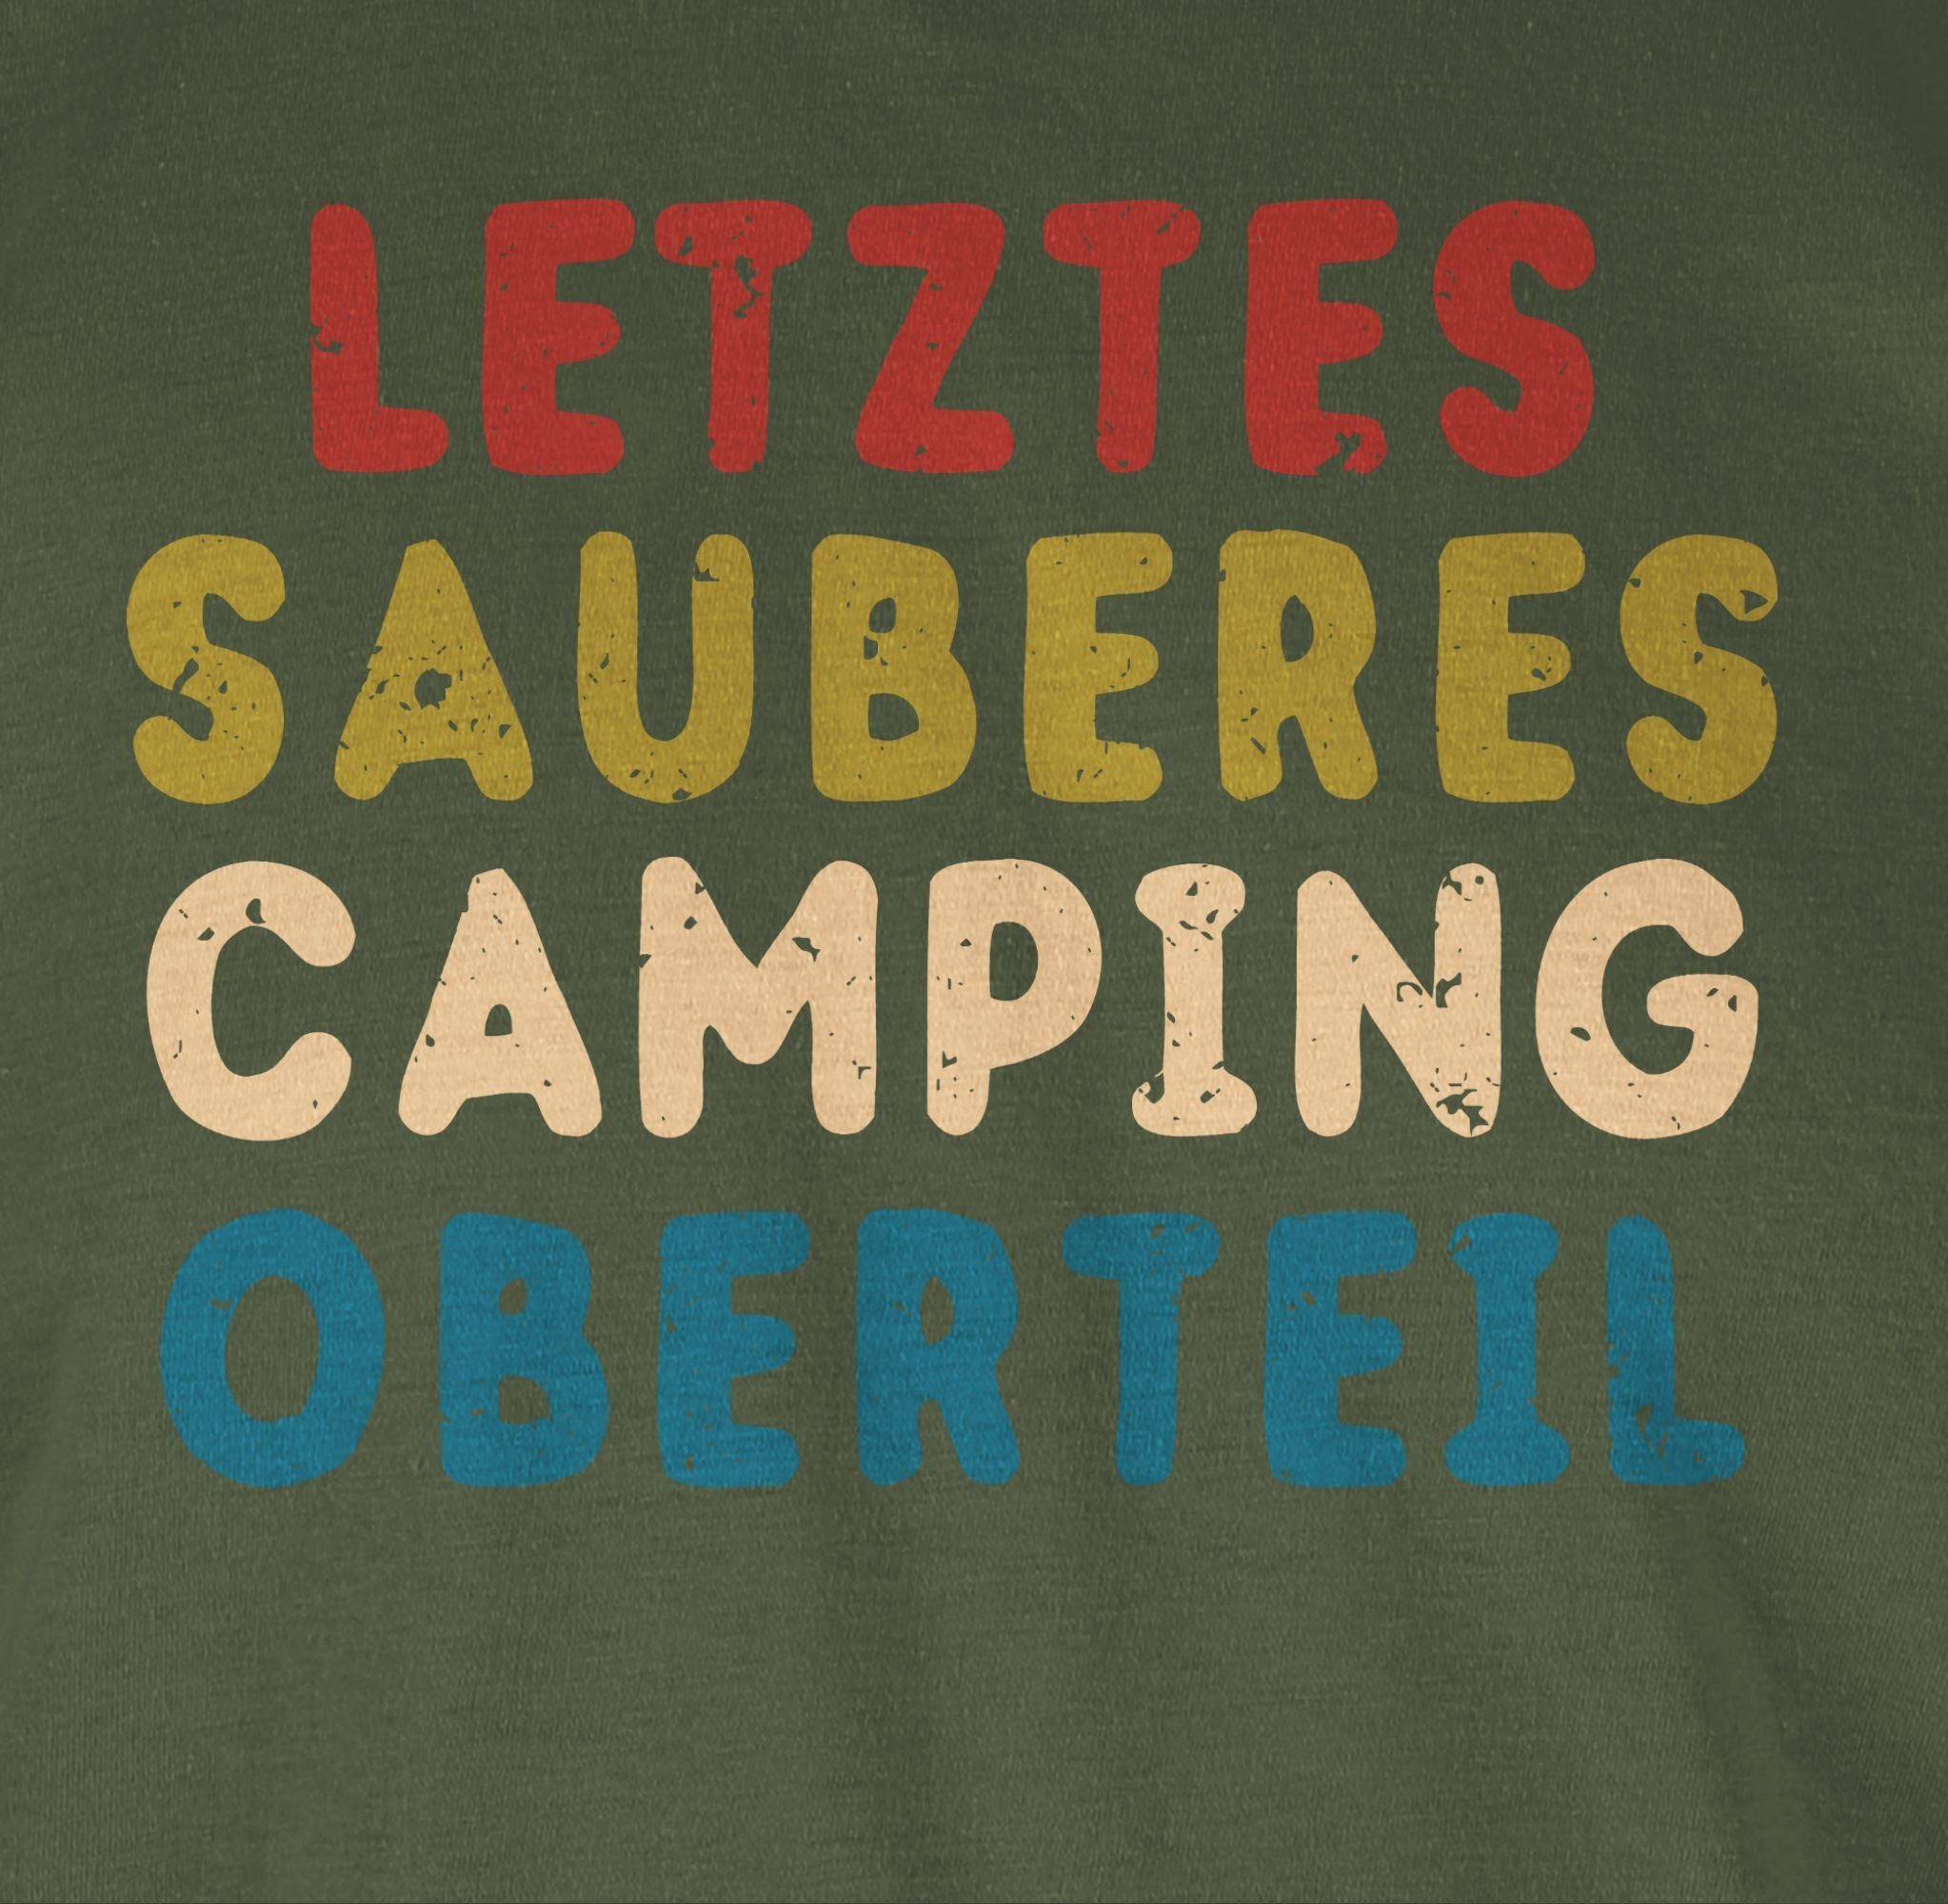 T-Shirt Letztes 03 Sprüche Oberteil Army Statement sauberes Shirtracer Camping Grün